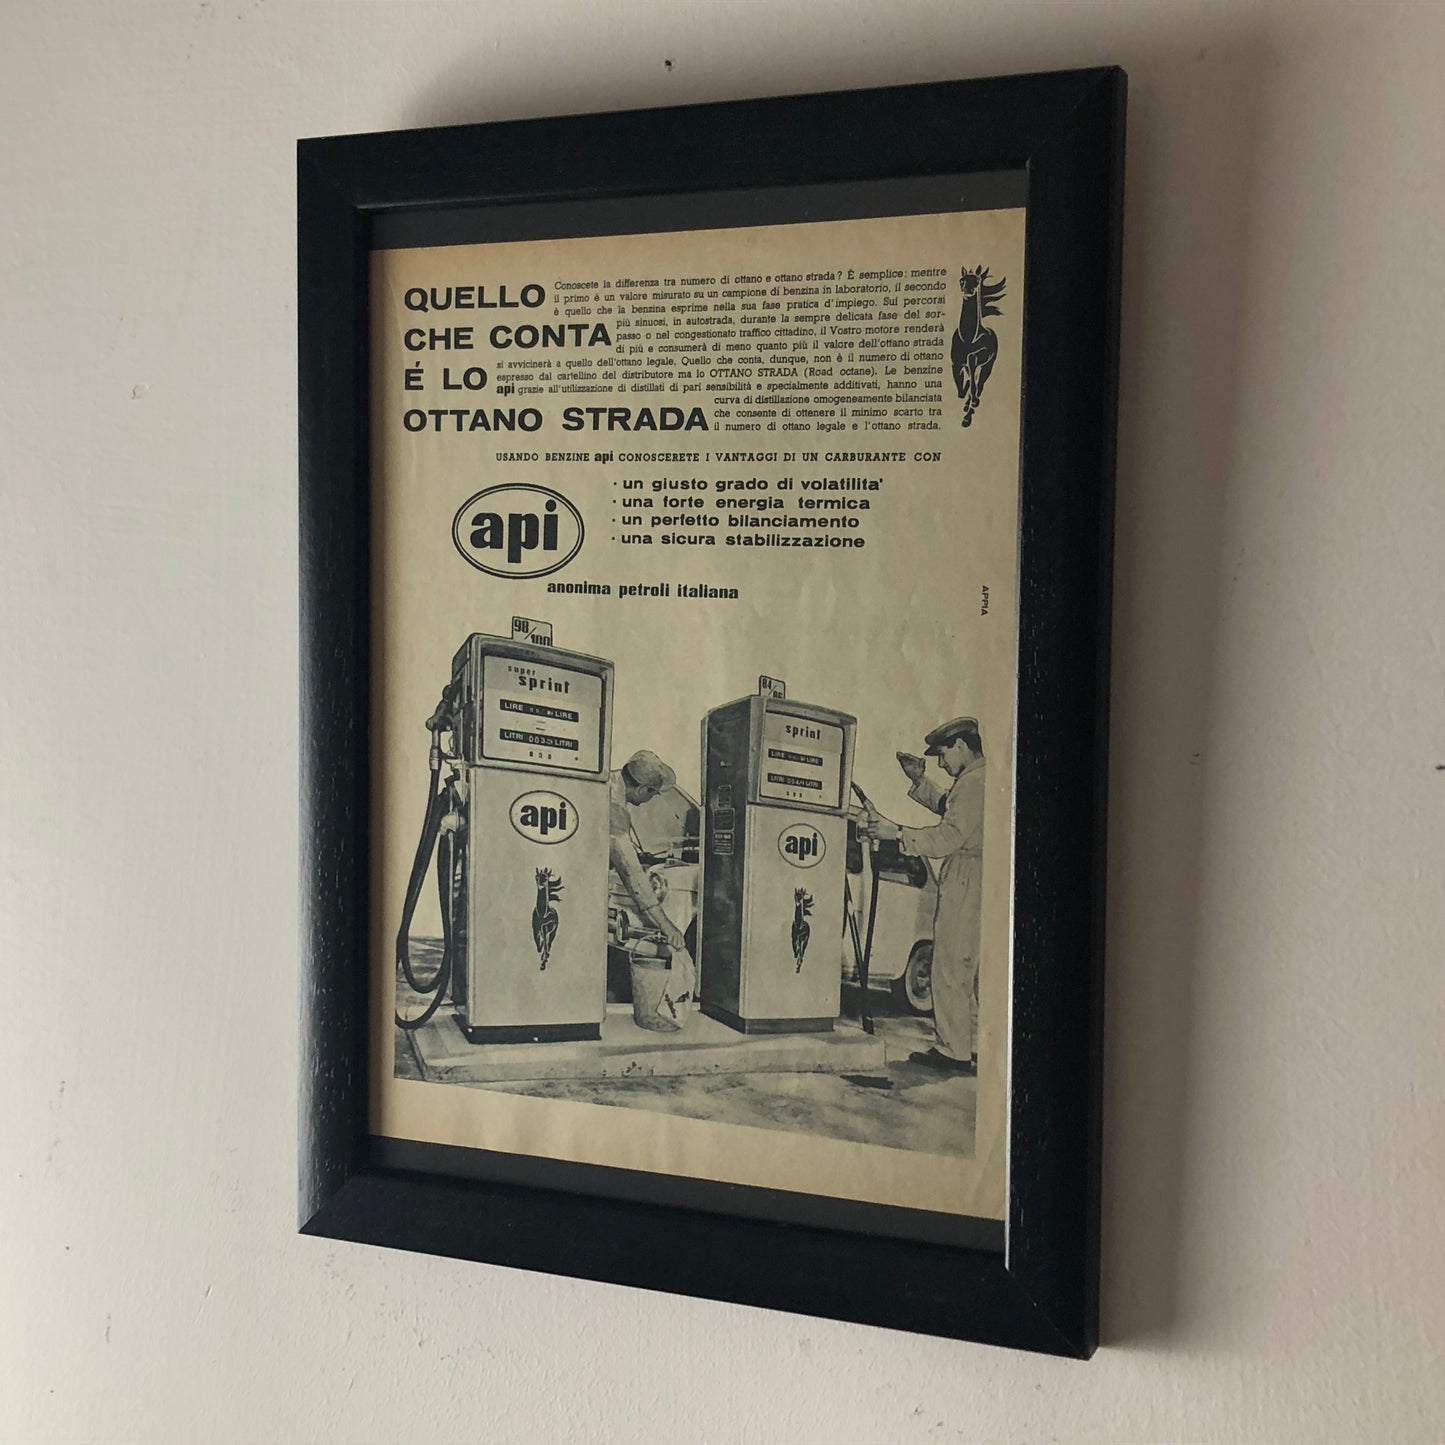 API, Pubblicità Anno 1960 Quello che Conta è lo Ottona Strada, Benzine Anonima Petroli Italiana